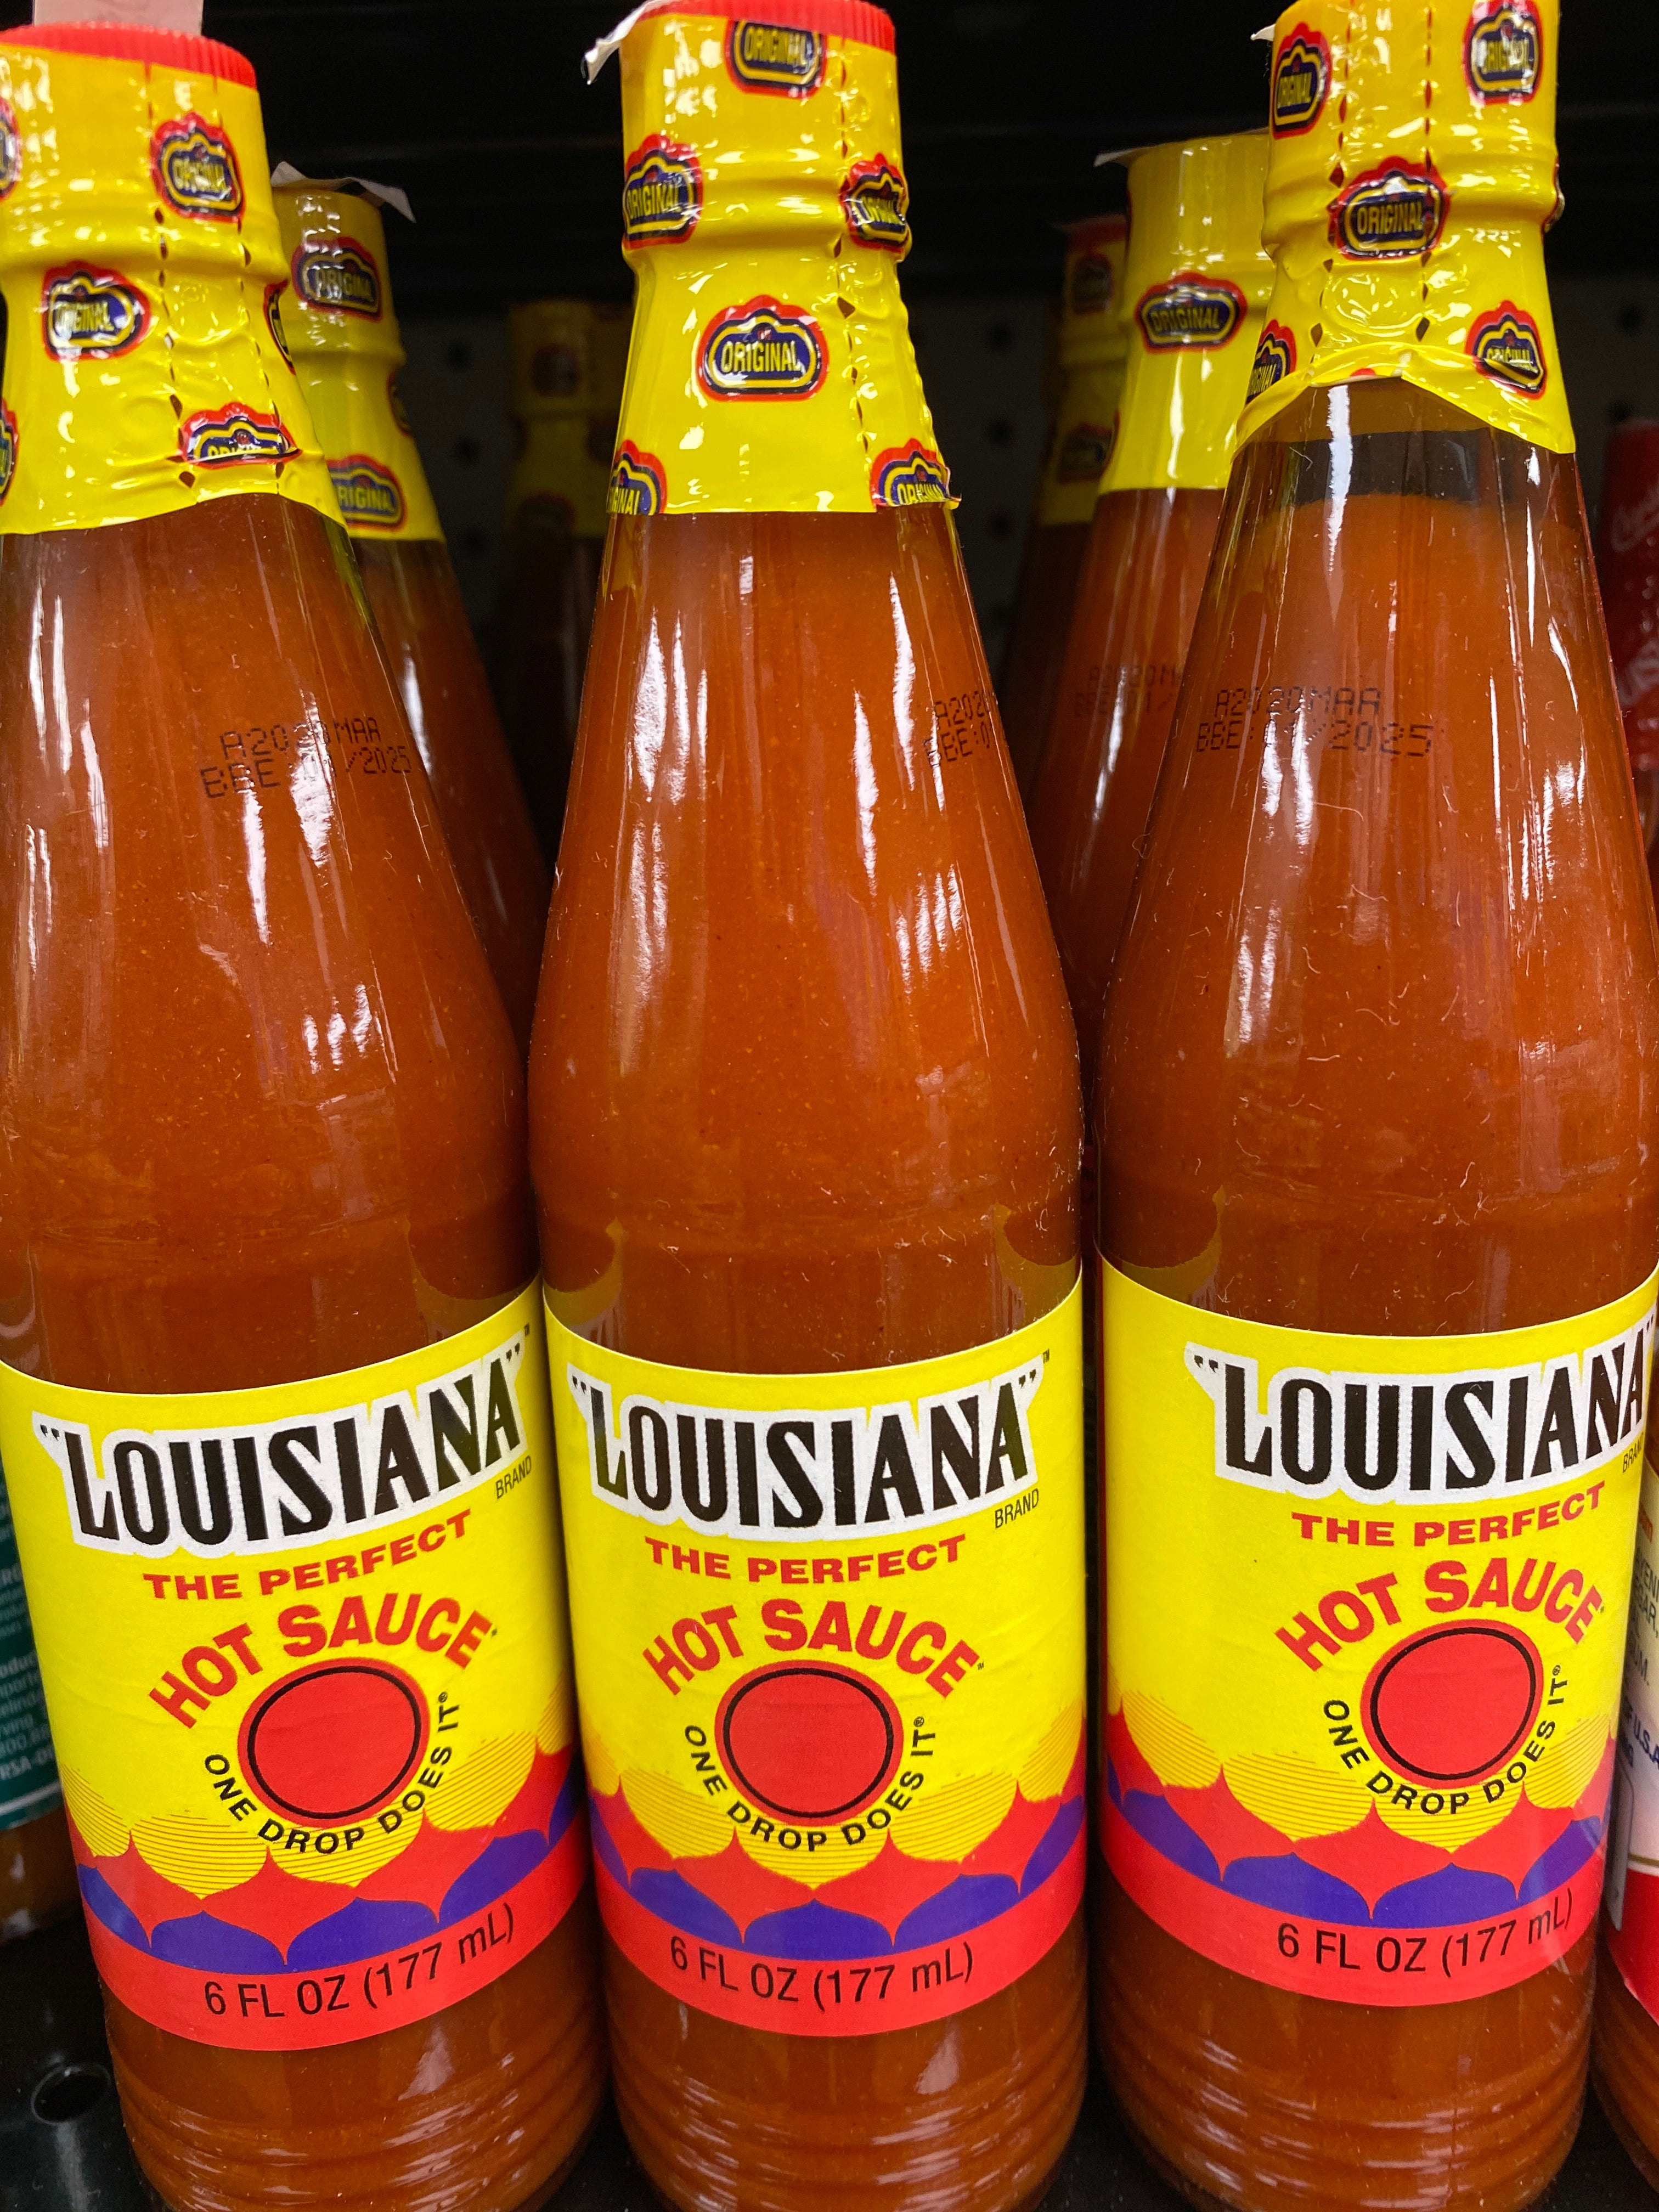 Louisiana The Original Hot Sauce